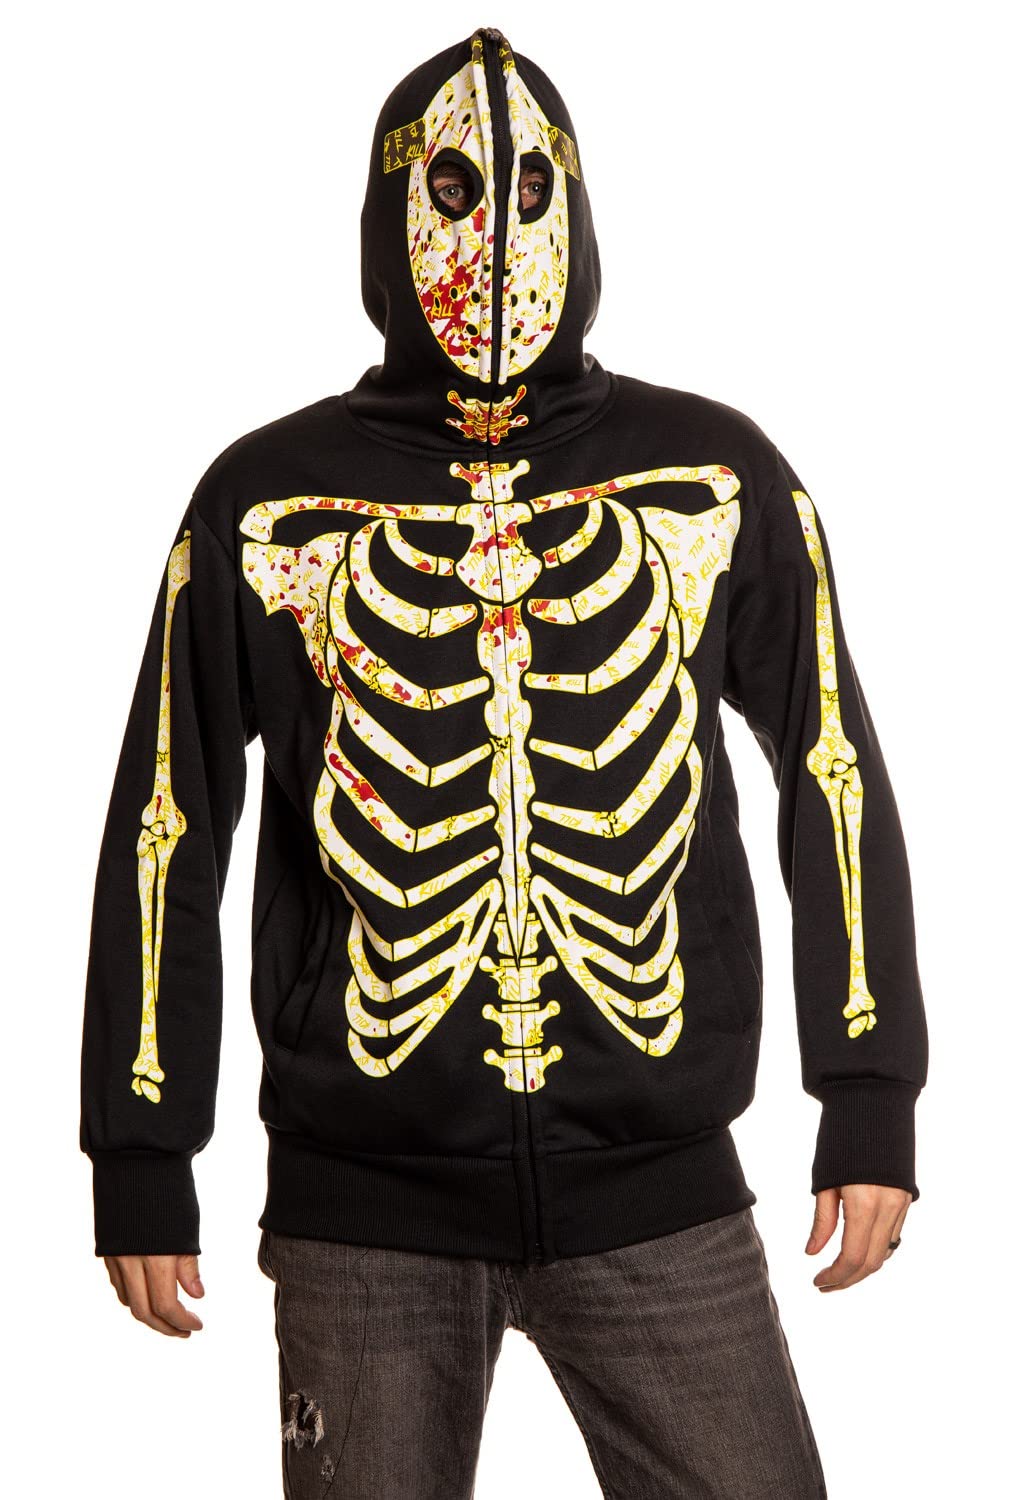 Glow in the Dark Hockey Mask Skeleton Hoodie - Full Zip Hooded Costume X-Large